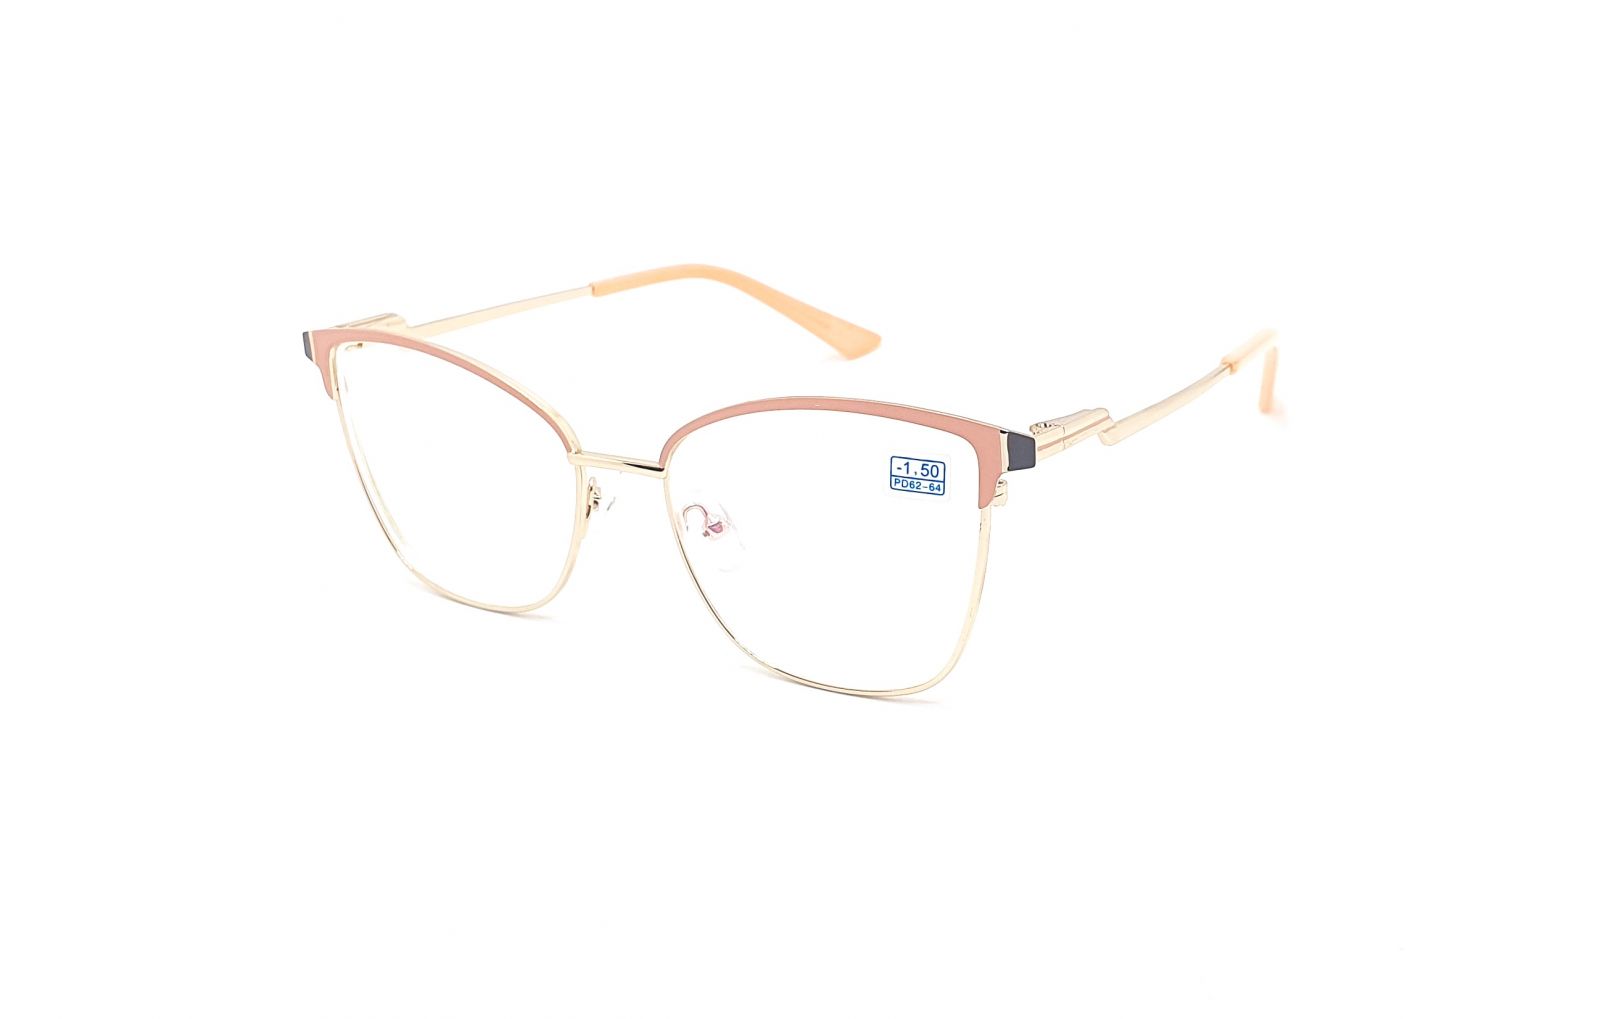 Dioptrické brýle 6861 / -4,00 beige/gold s antireflexní vrstvou Flex